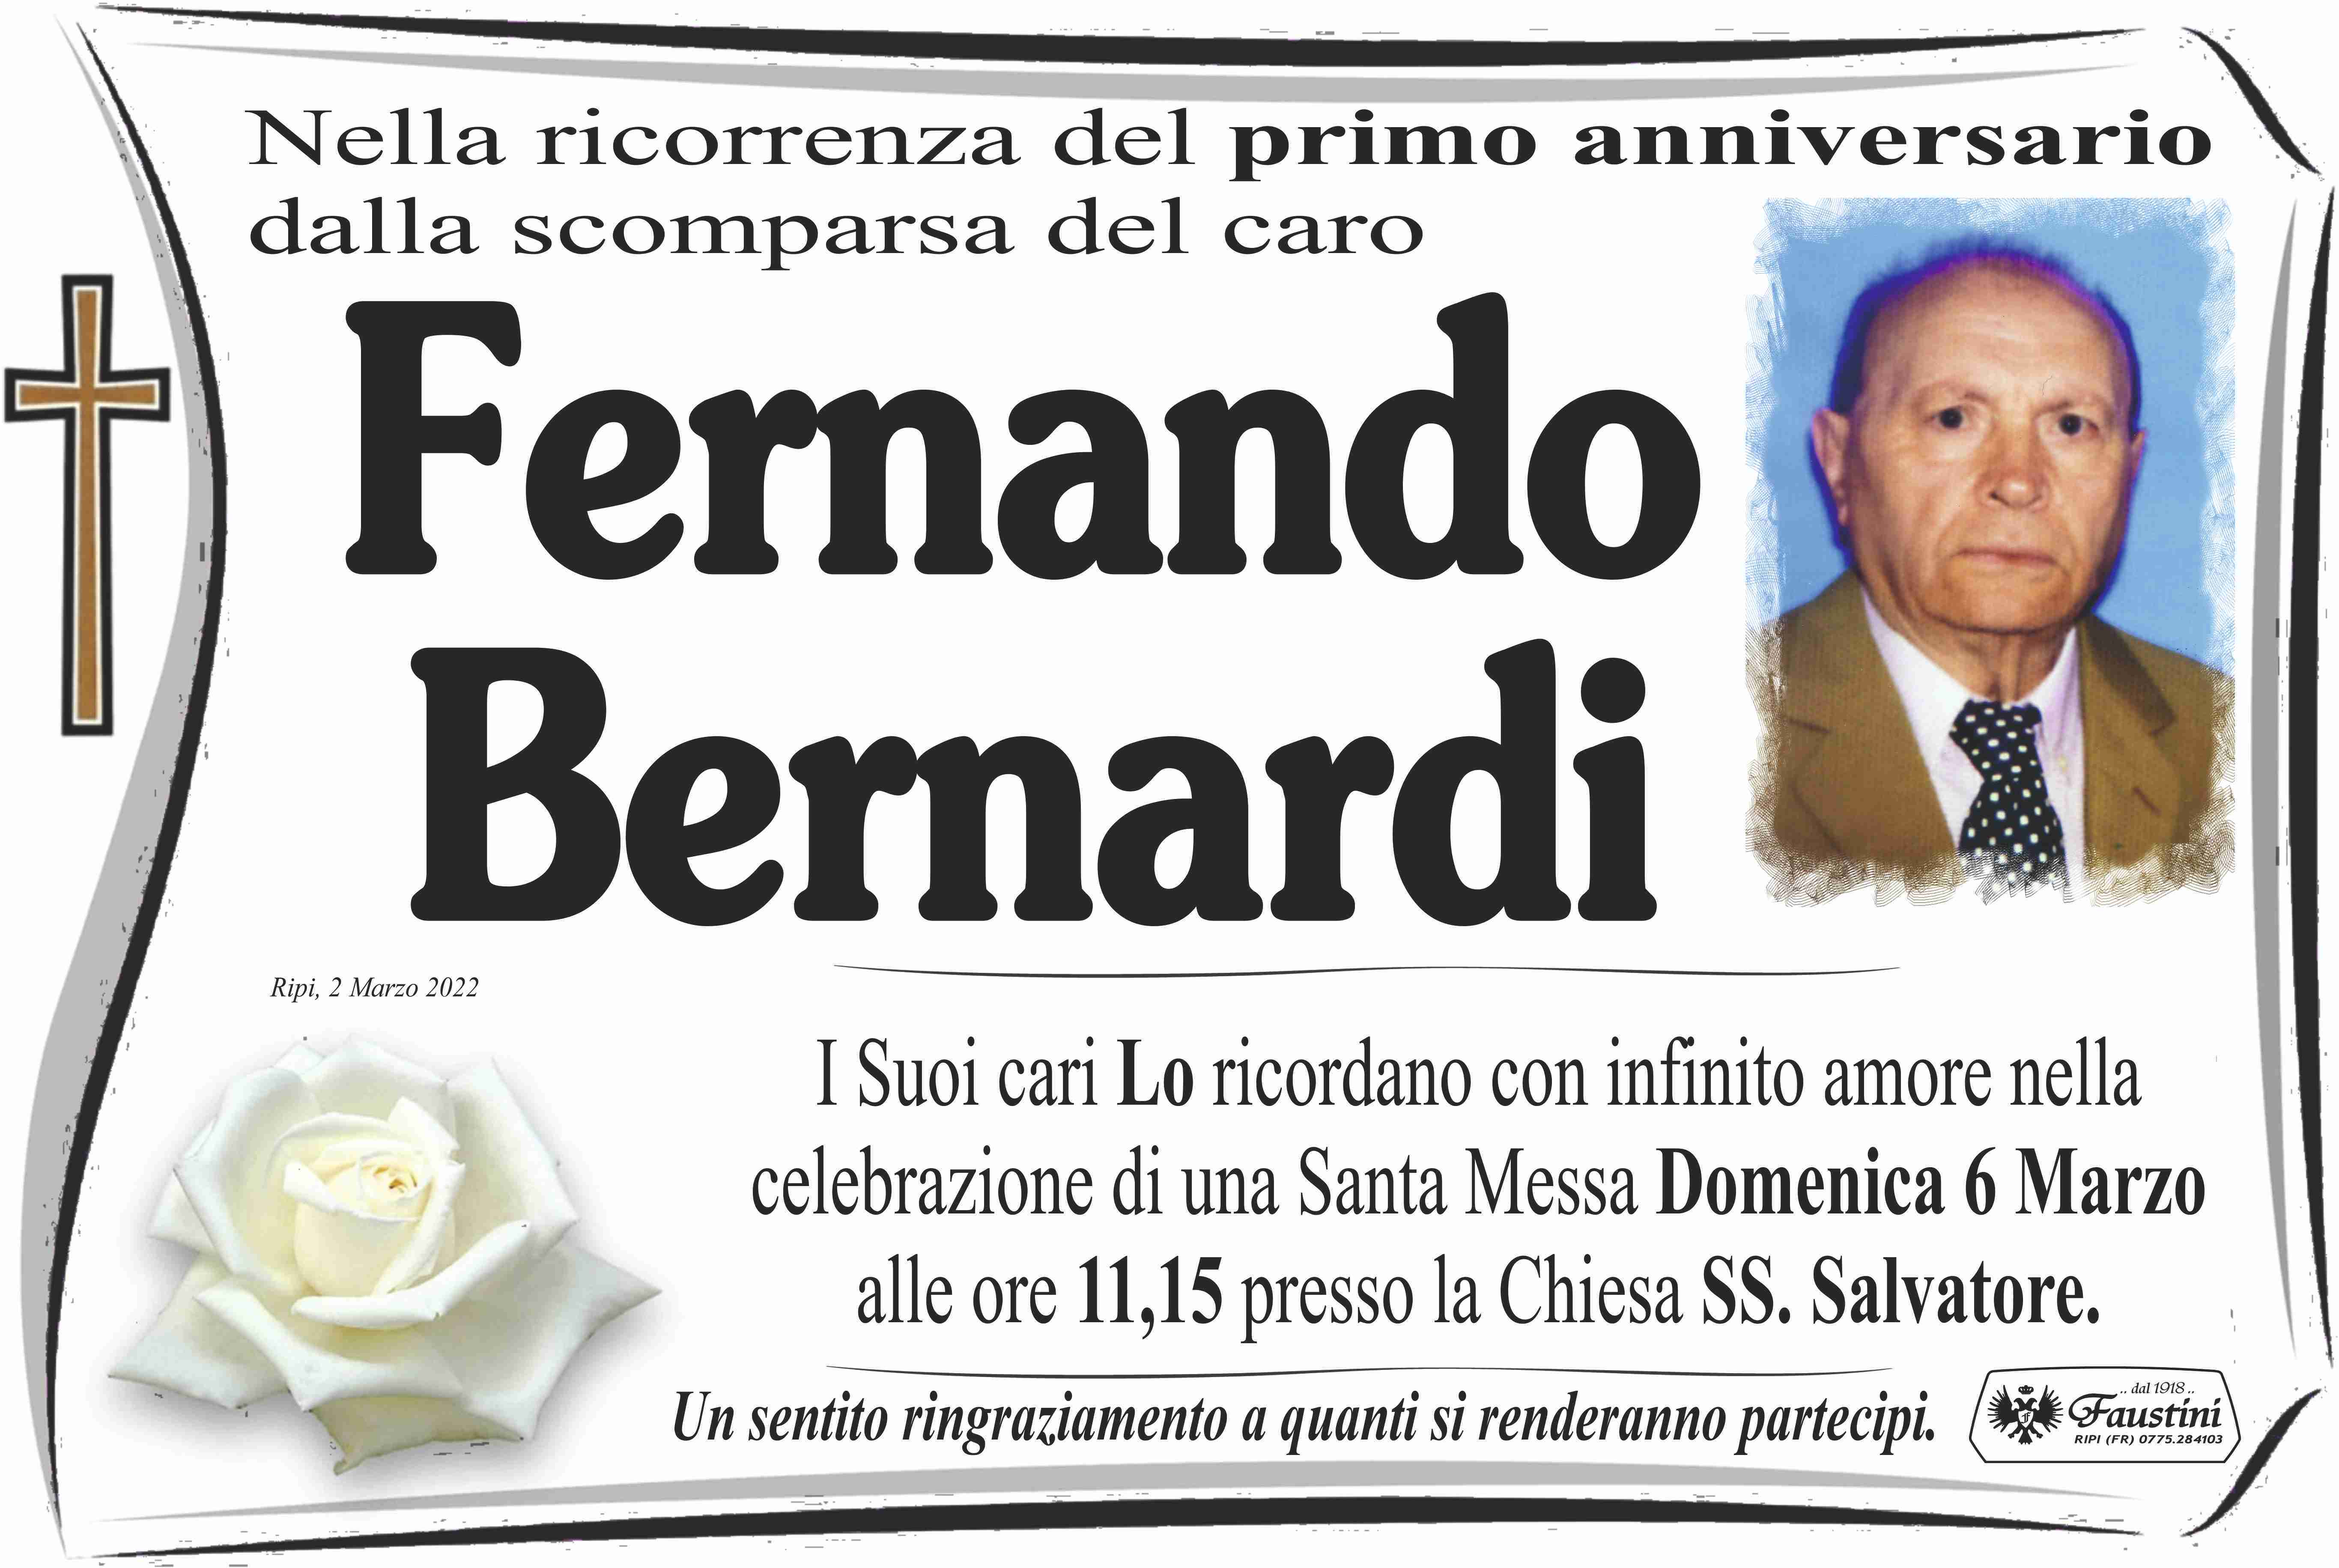 Fernando Bernardi